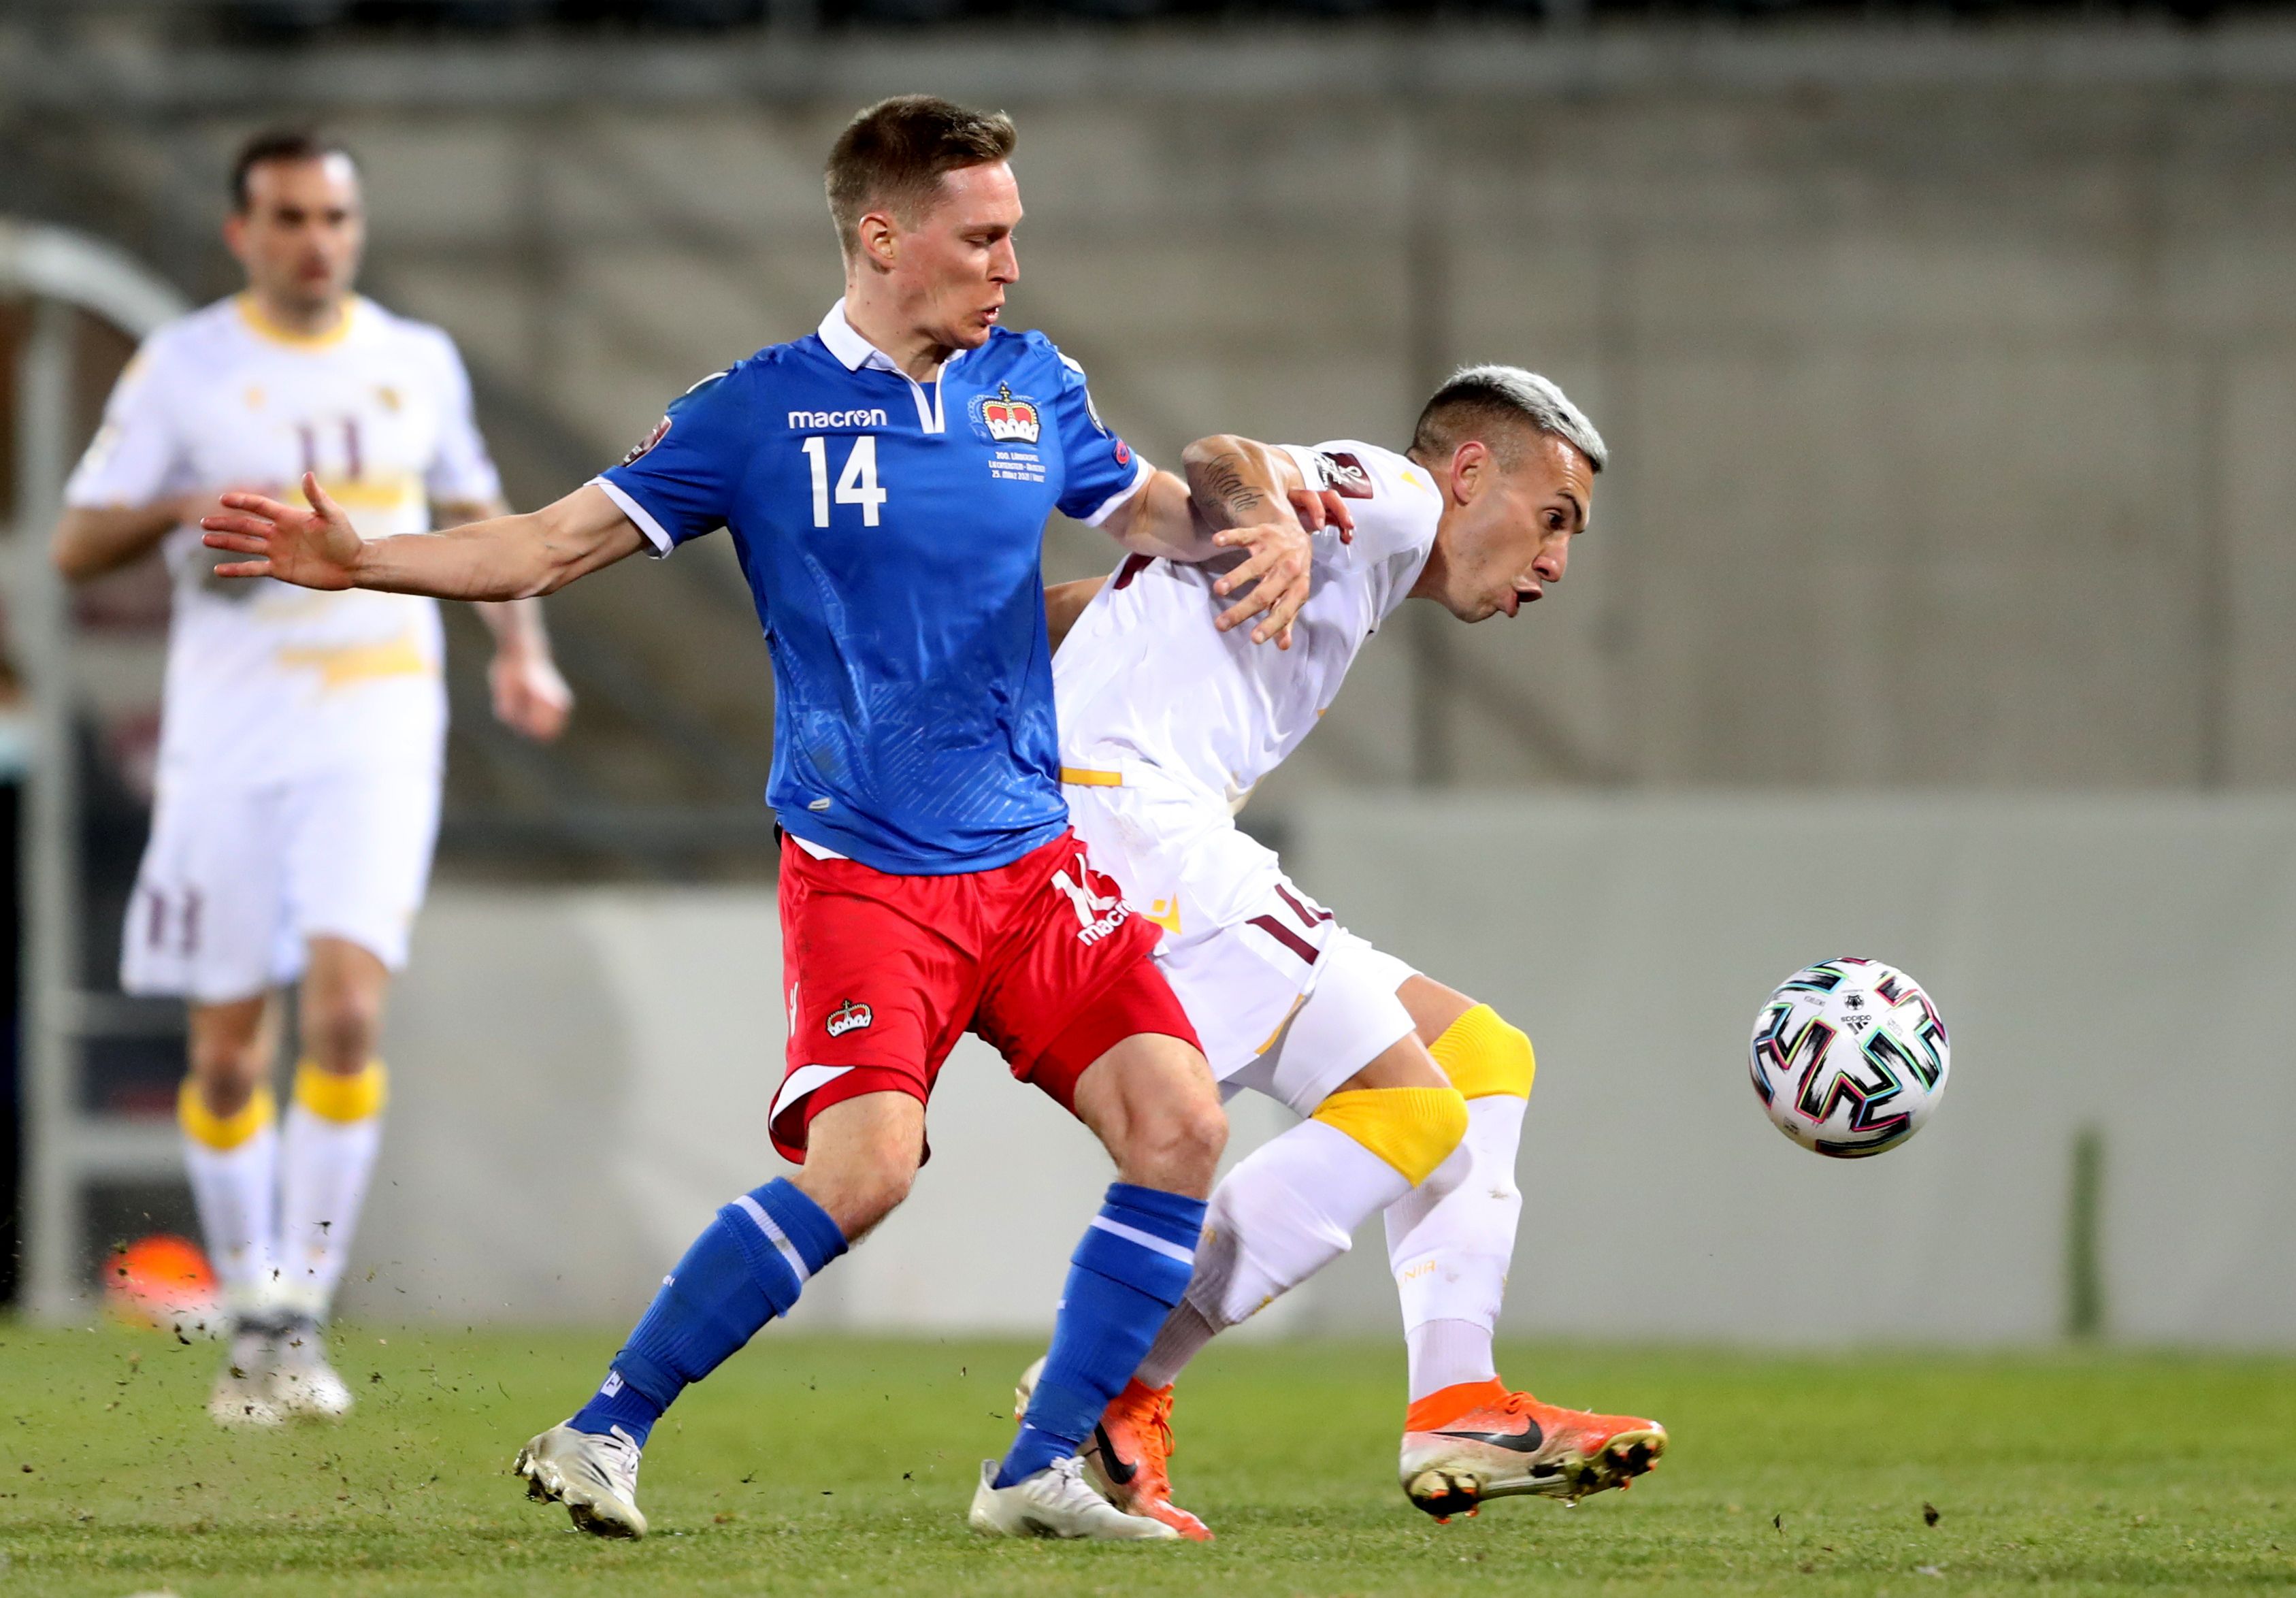 El delantero de Huracán fue una de las figuras en el duelo ante Liechtenstein. Foto: REUTERS/Arnd Wiegmann